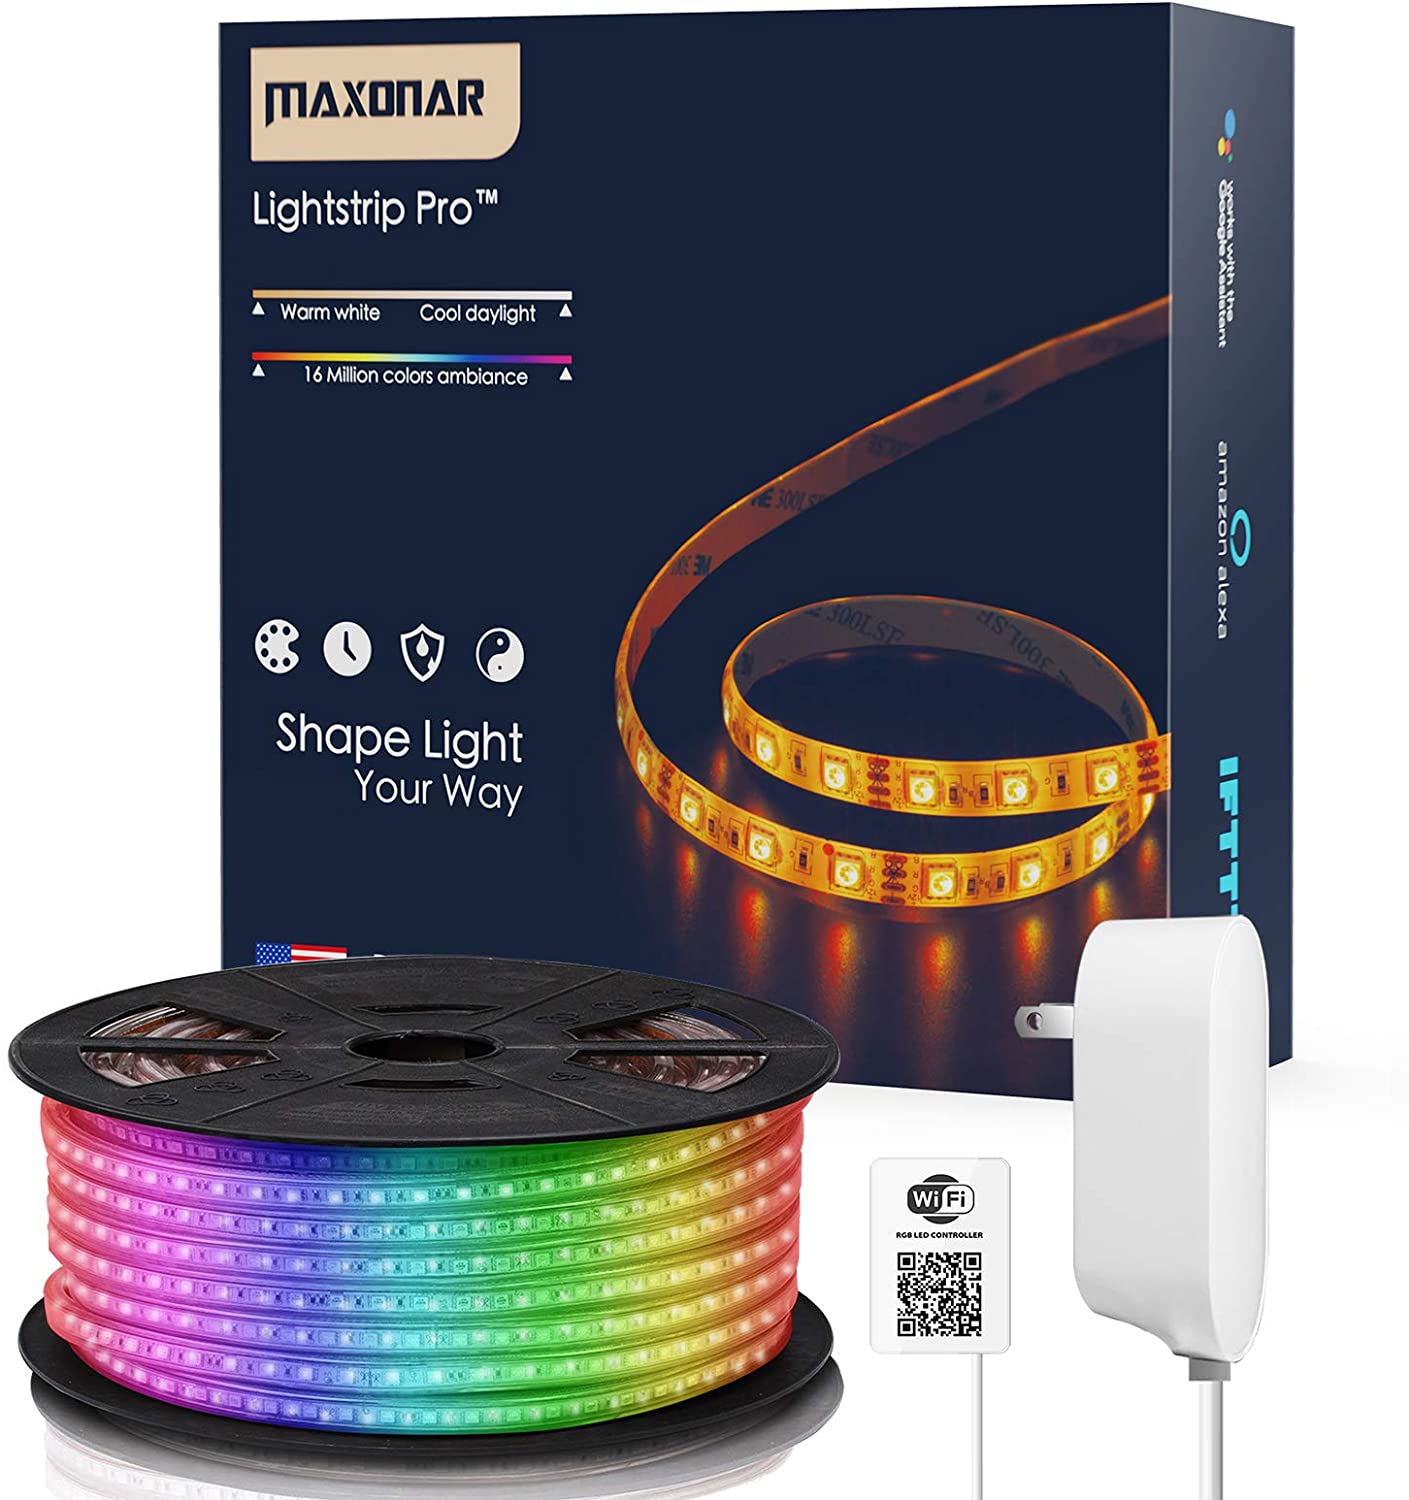 Maxonar Smart LED Strip Lights